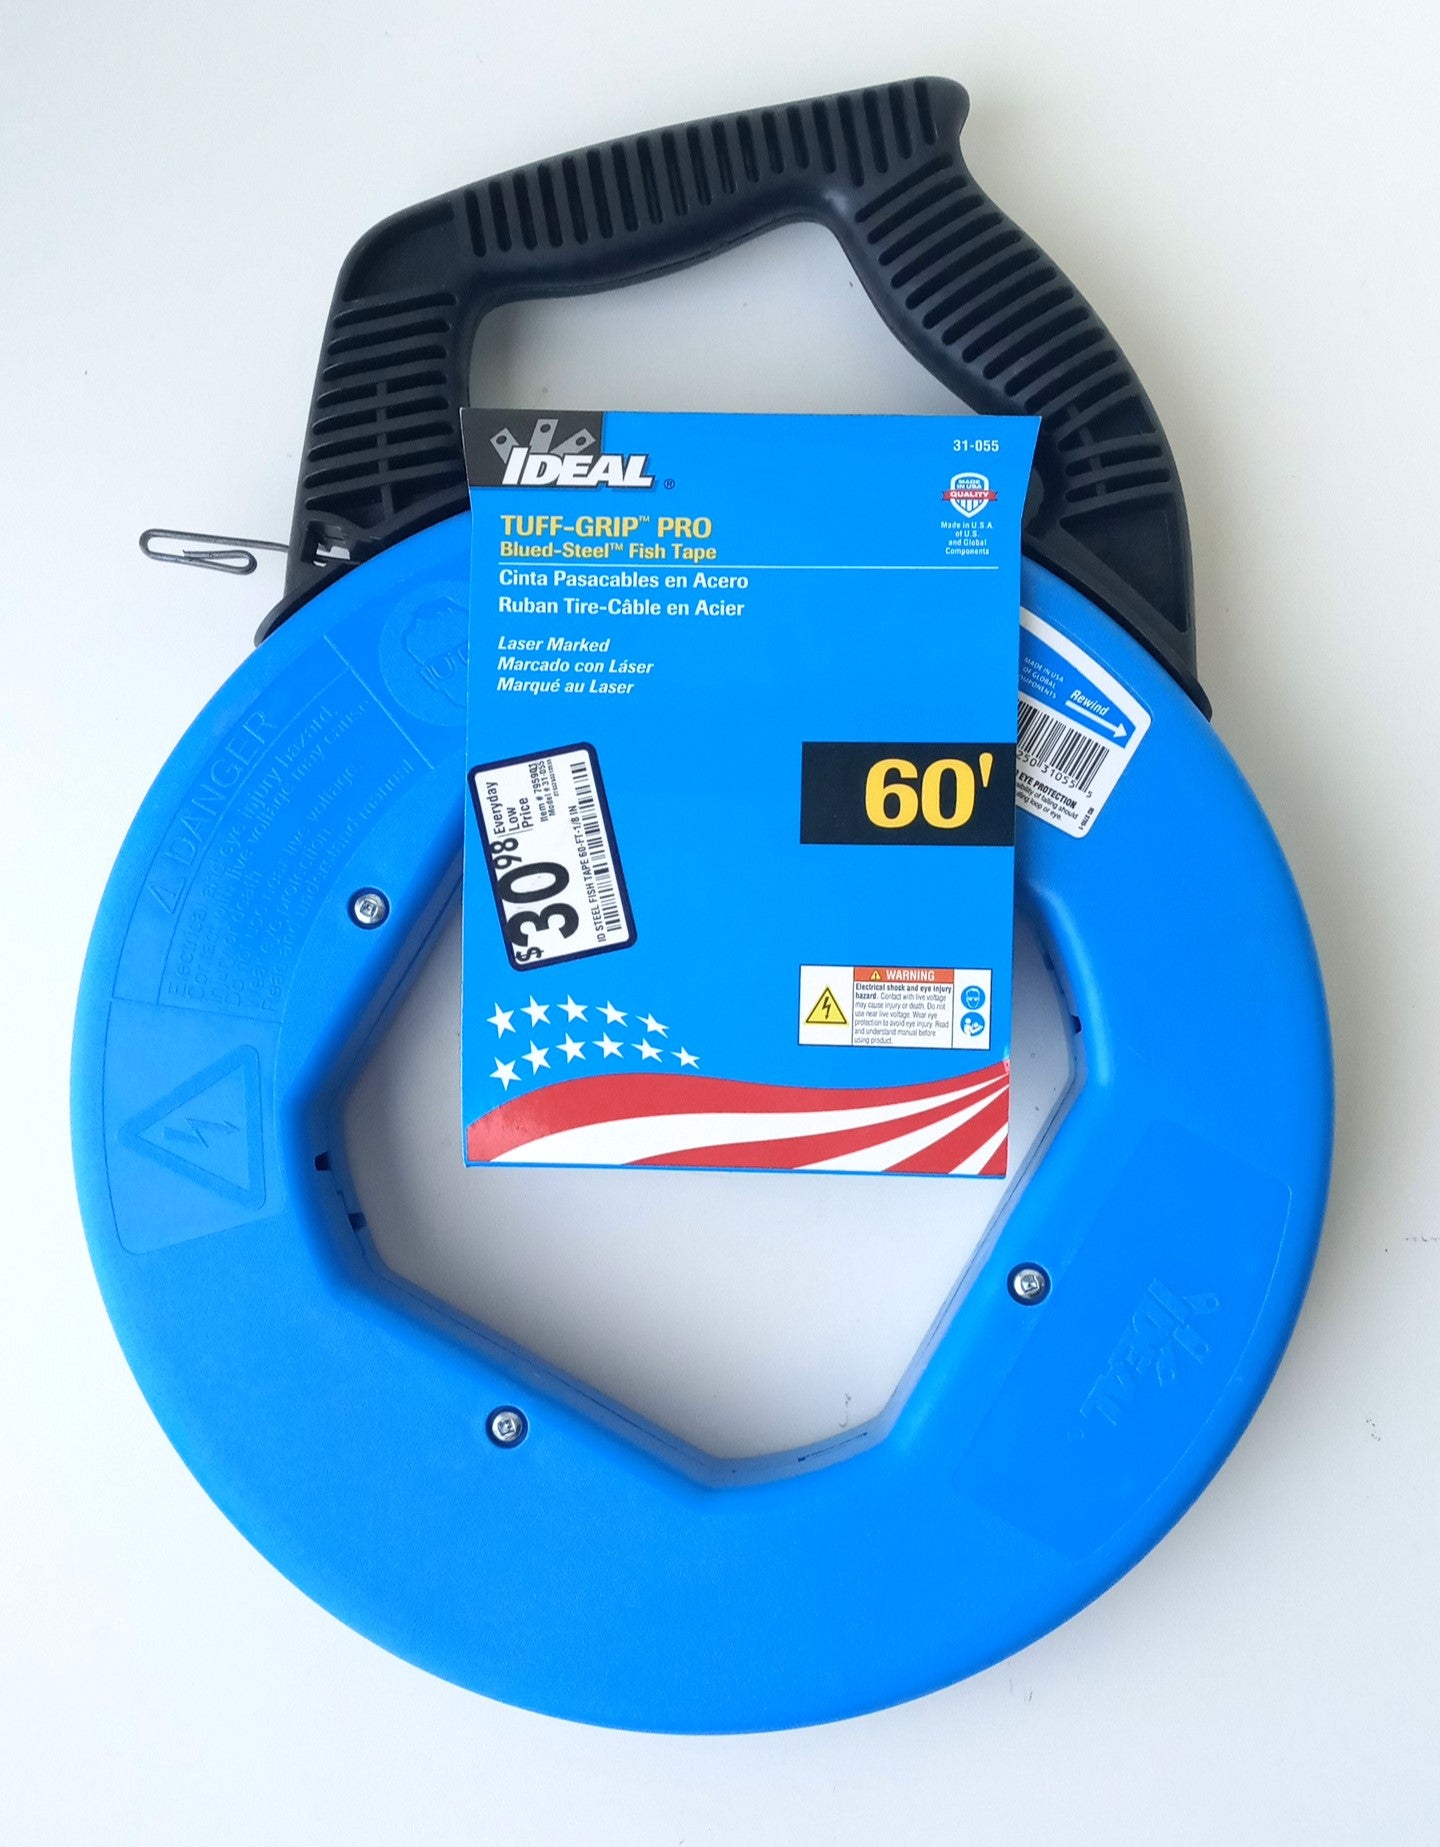 Ideal 31-055 Tuff-Grip Pro Blued-Steel Fish Tape 60' x 1/8"